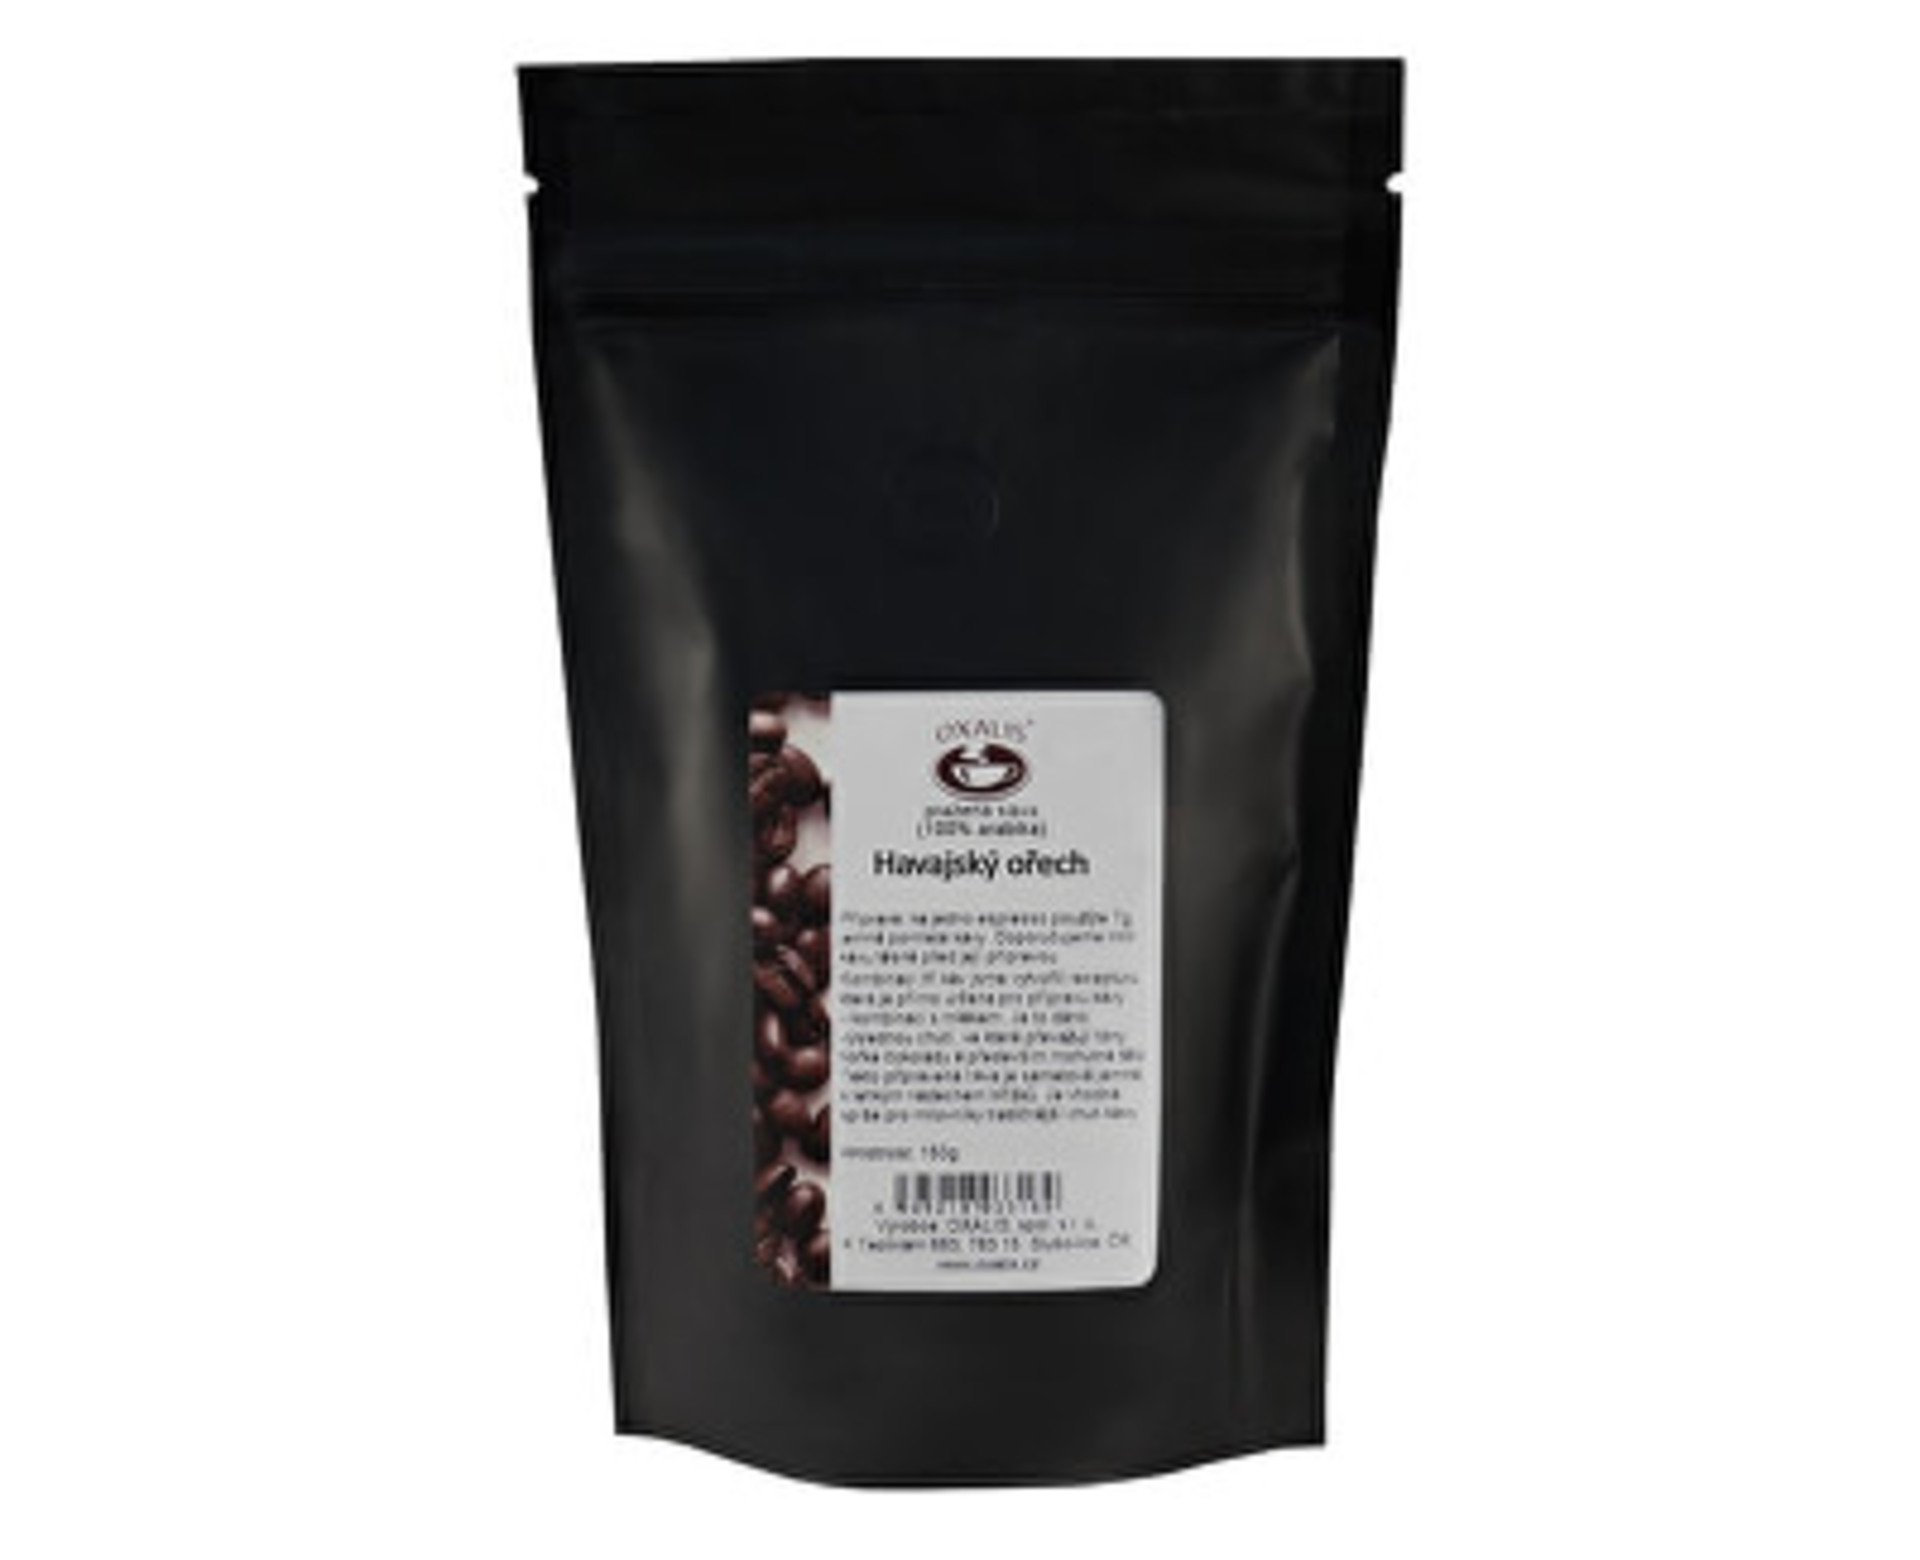 Oxalis káva aromatizovaná mletá - Havajský ořech 150 g